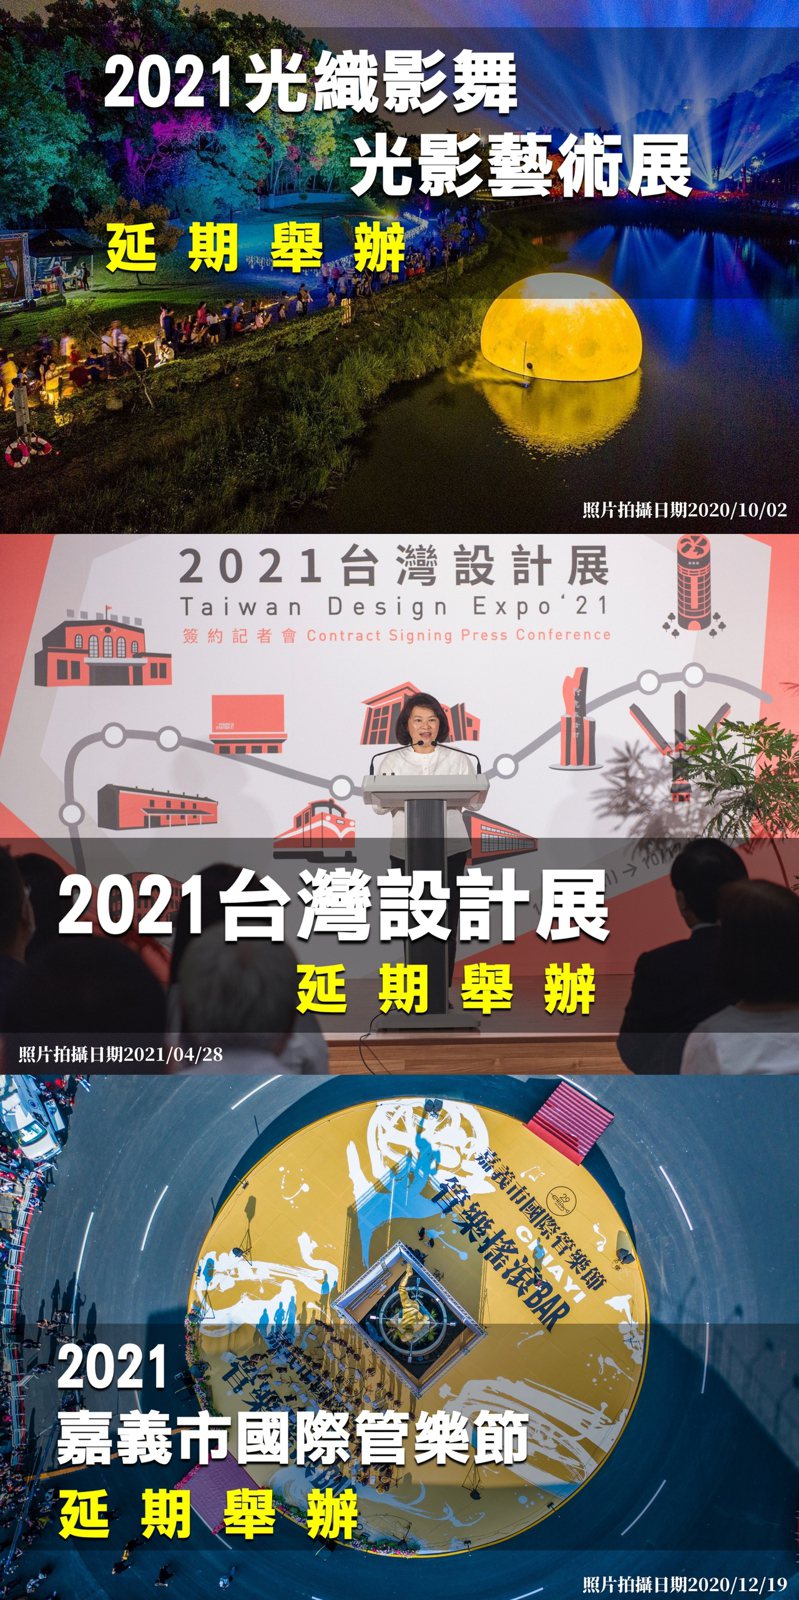 嘉義市光織影舞 台灣設計展 國際管樂節都因疫情順延 旅遊 聯合新聞網